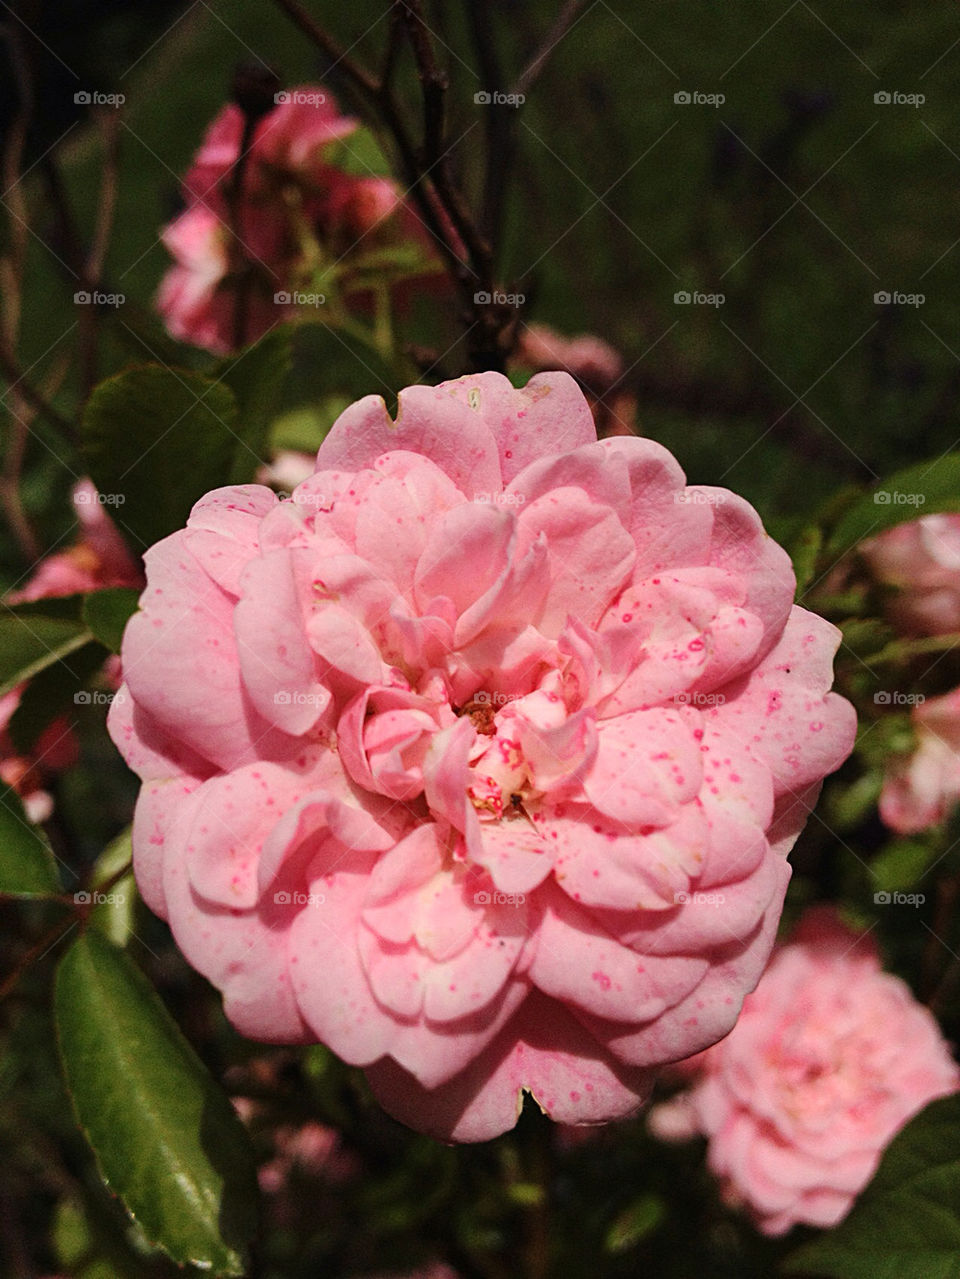 flower rose bushrose by apeksa